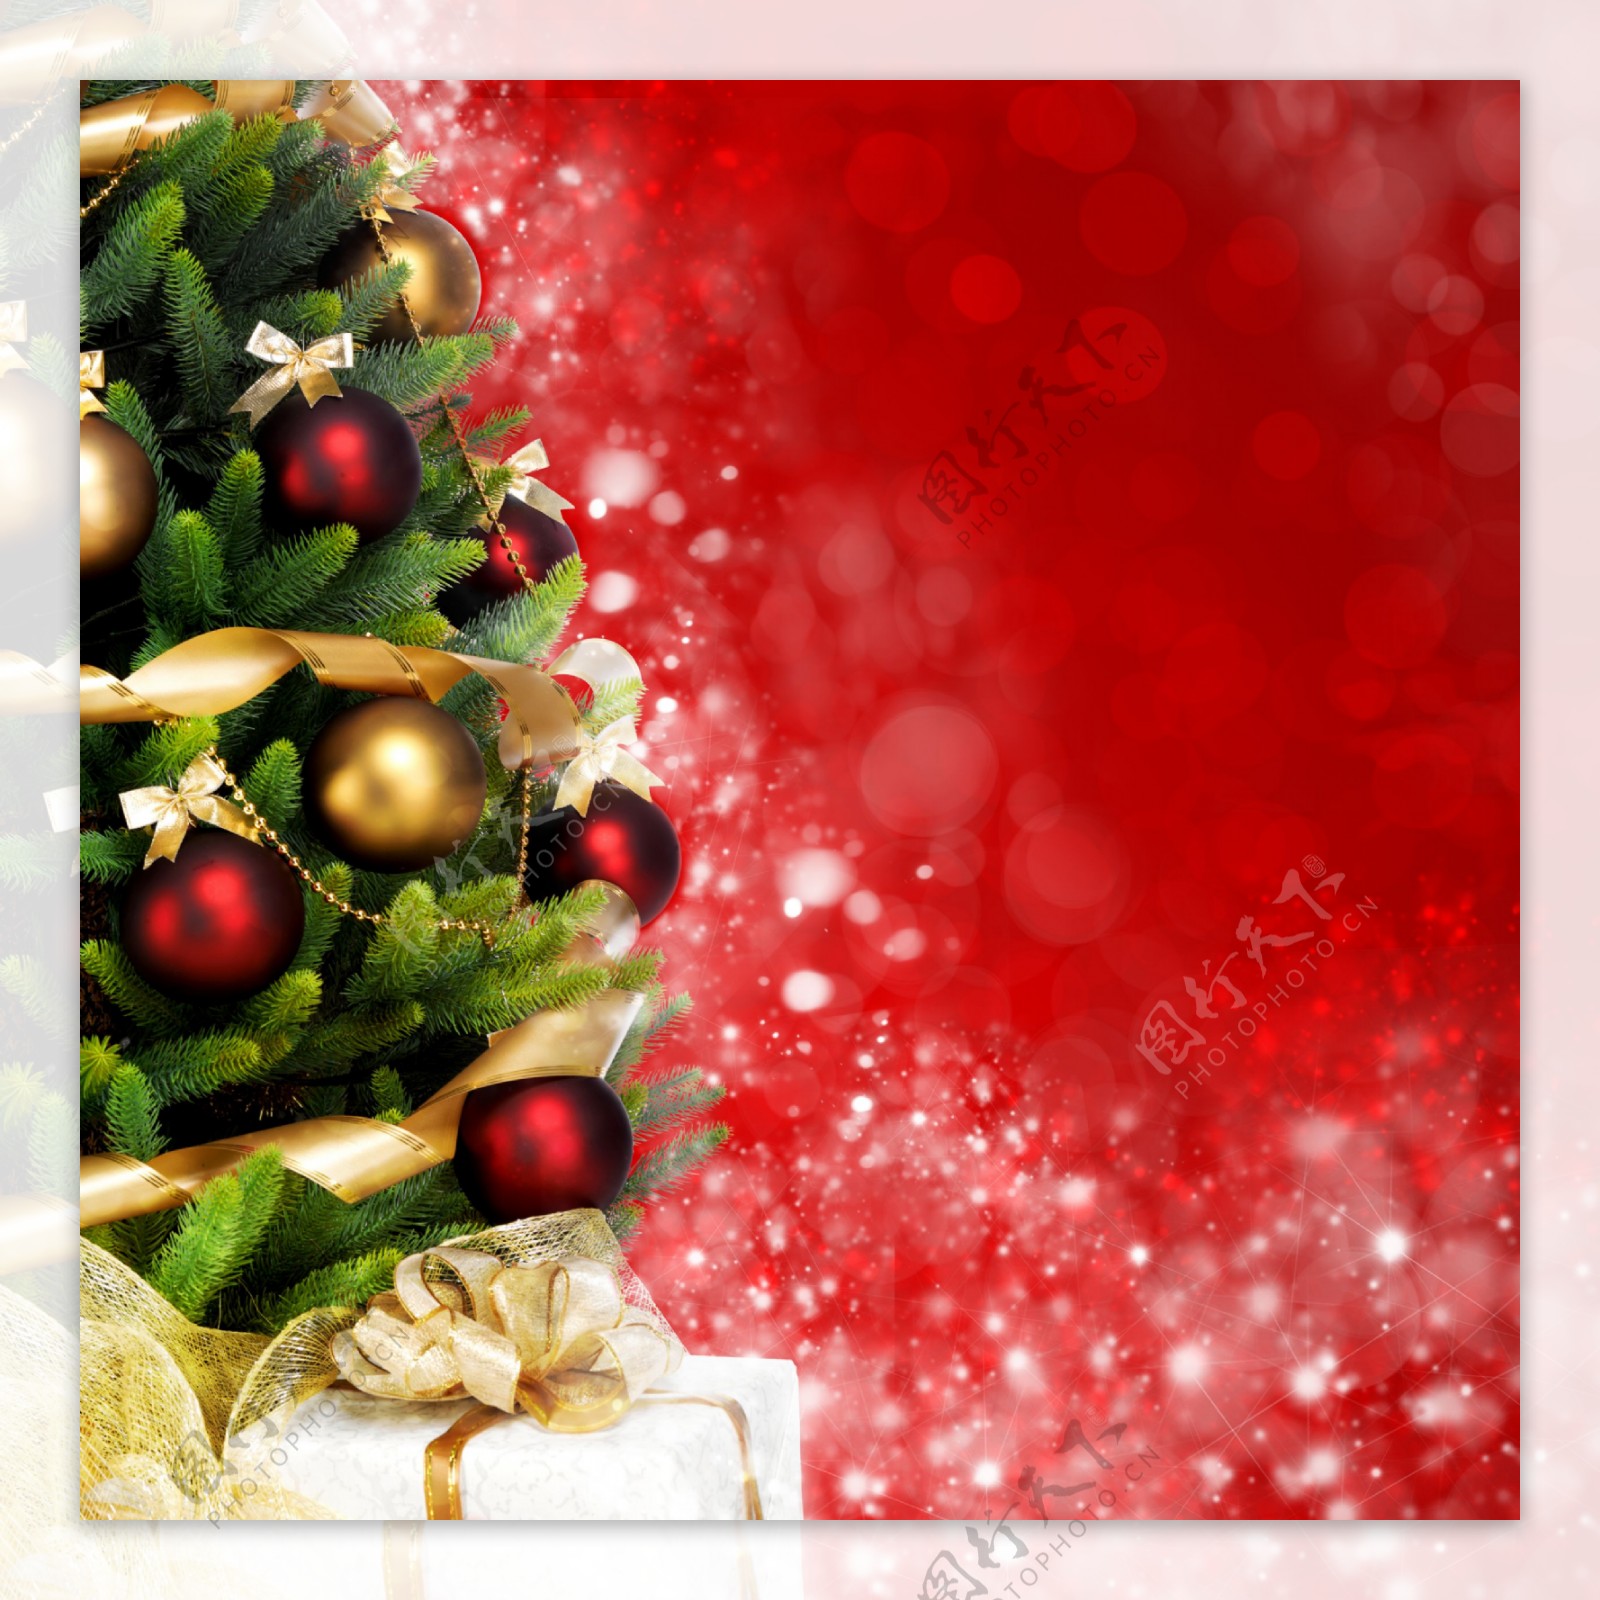 漂亮圣诞树与红色背景图片